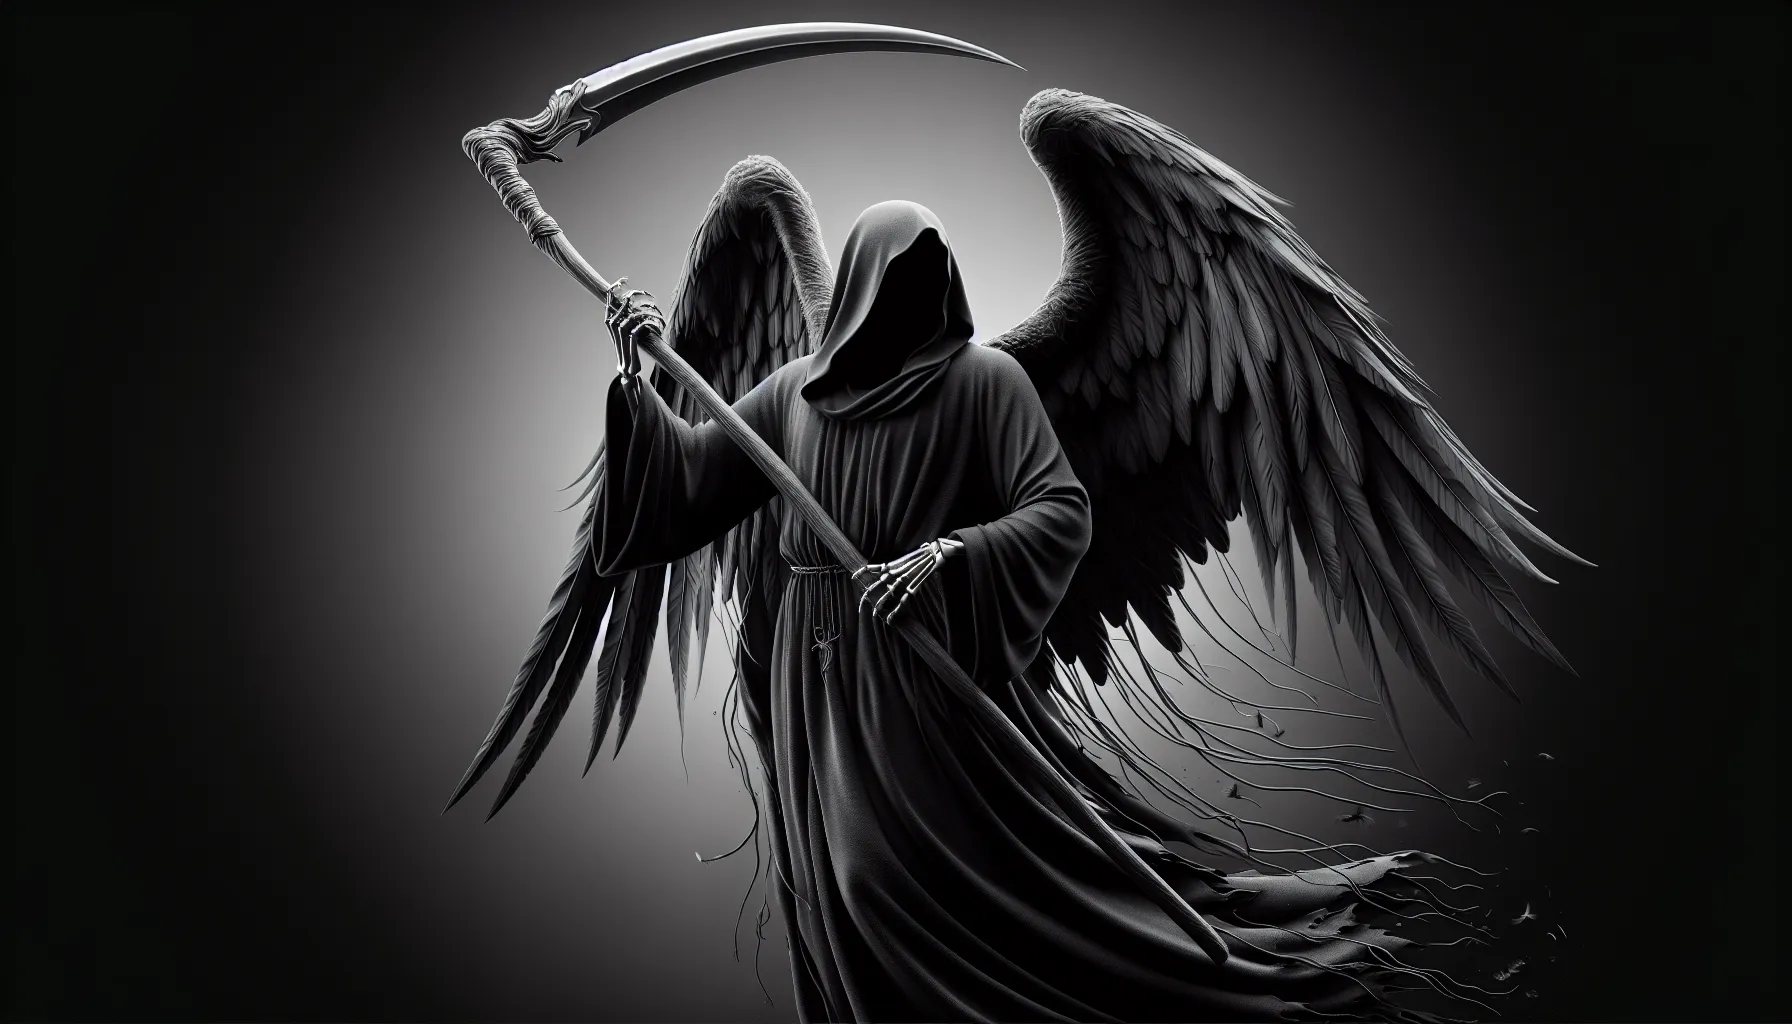 Imagen de un Ángel de la Muerte con capa negra y guadaña, representación artística.